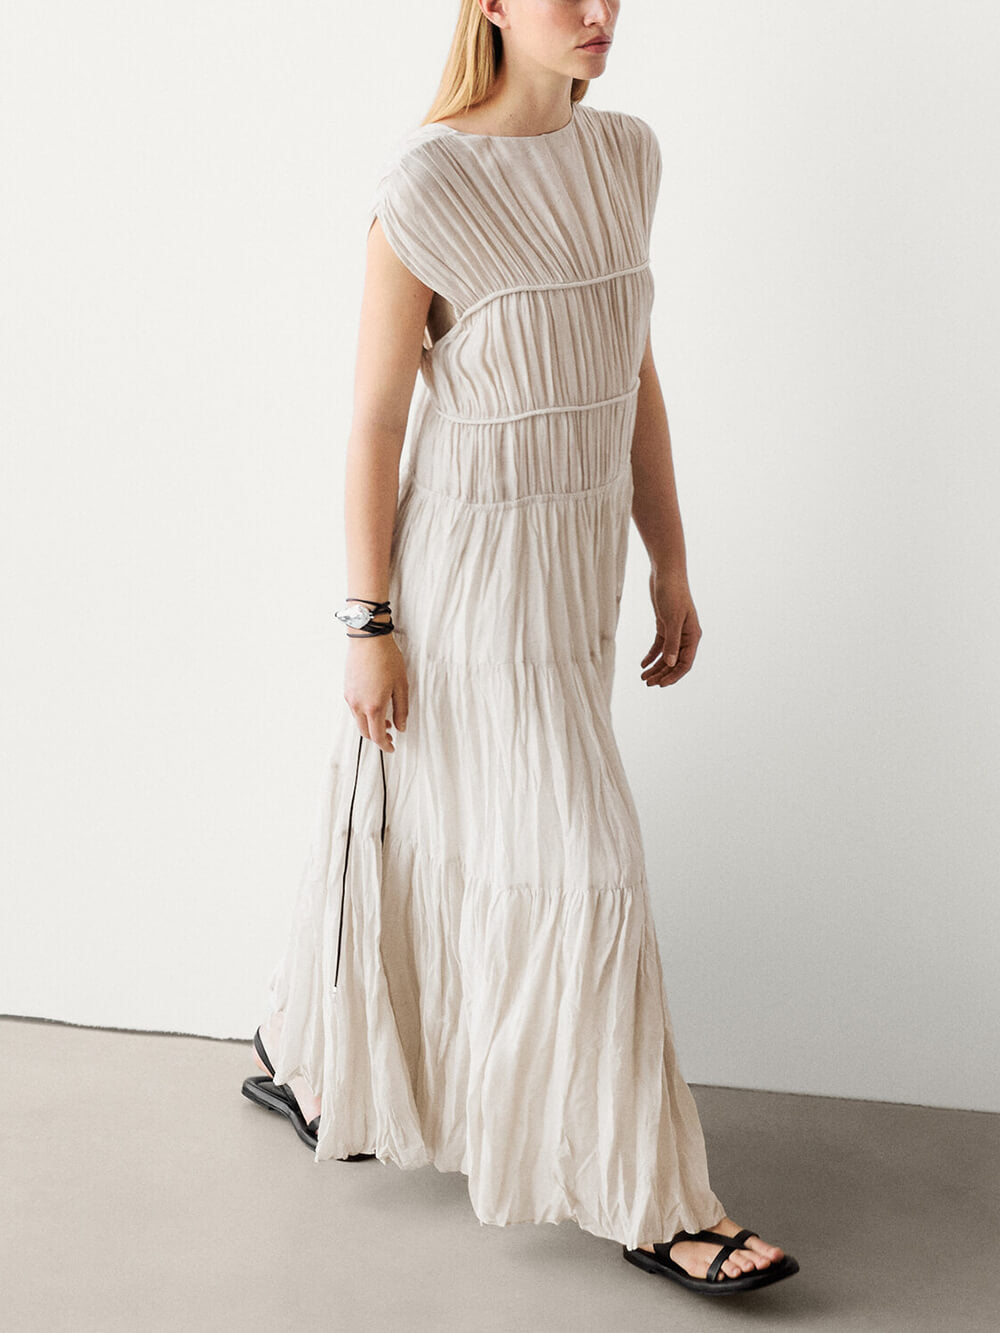 Unique Reversible Lace-Up Pleated Dress